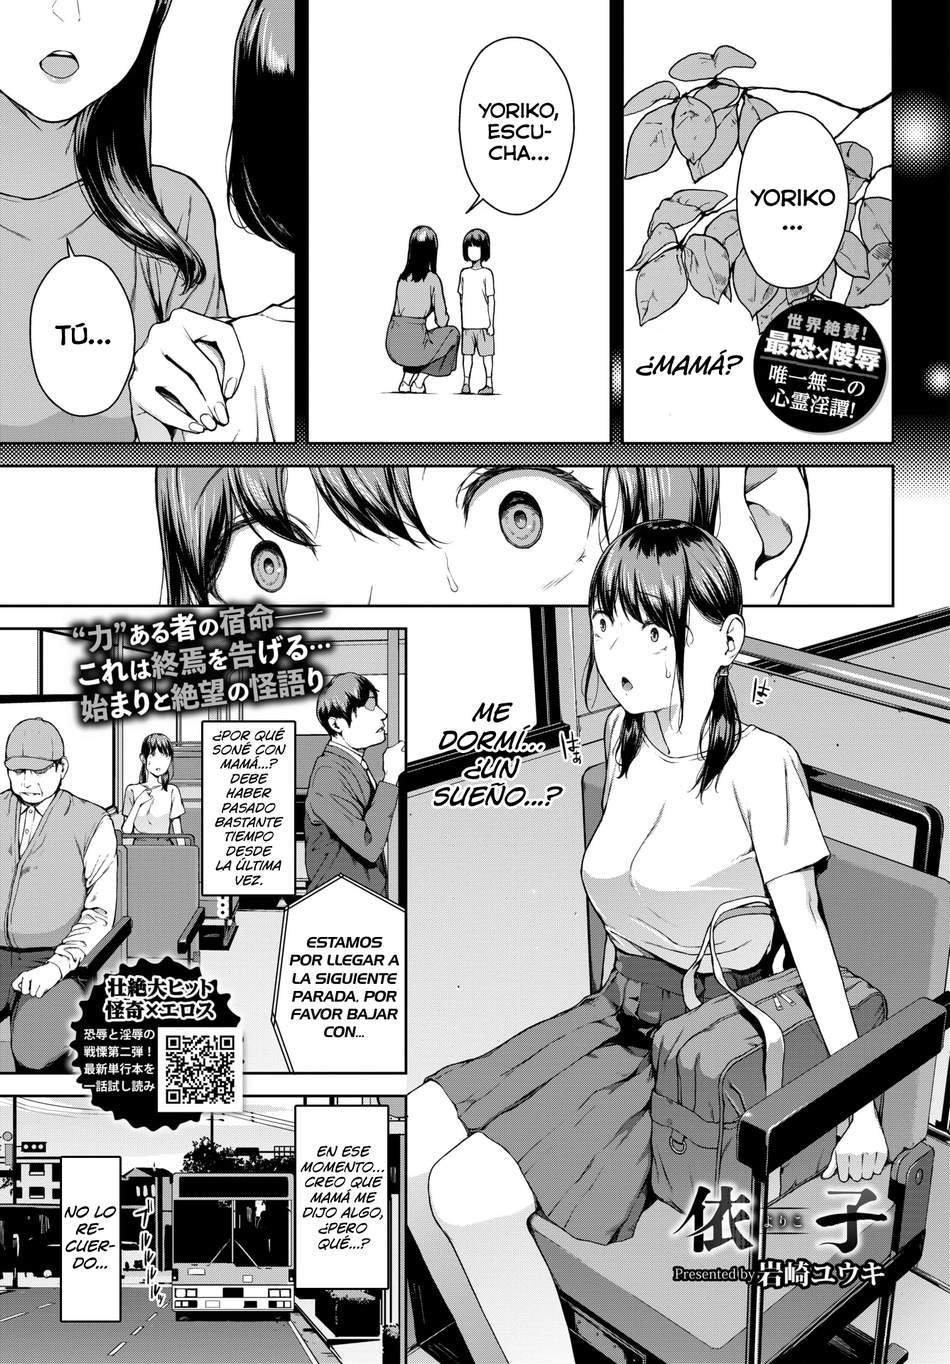 Yoriko #1 - Page #1